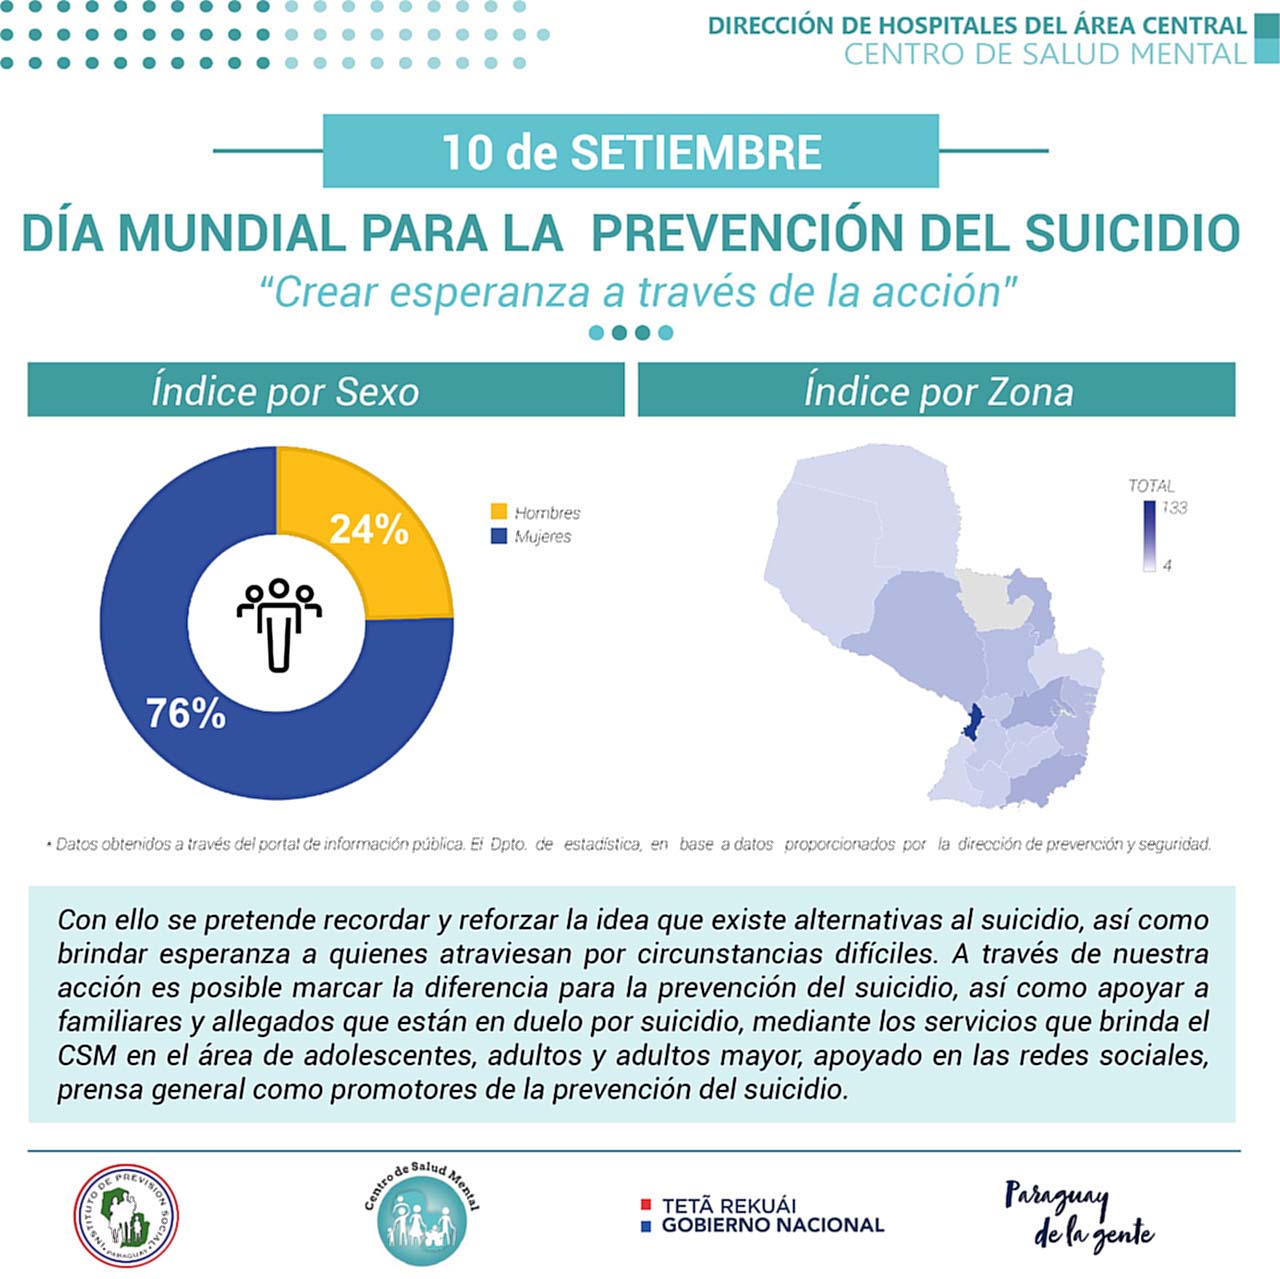 10 de setiembre: “Día Mundial para la prevención del suicidio”